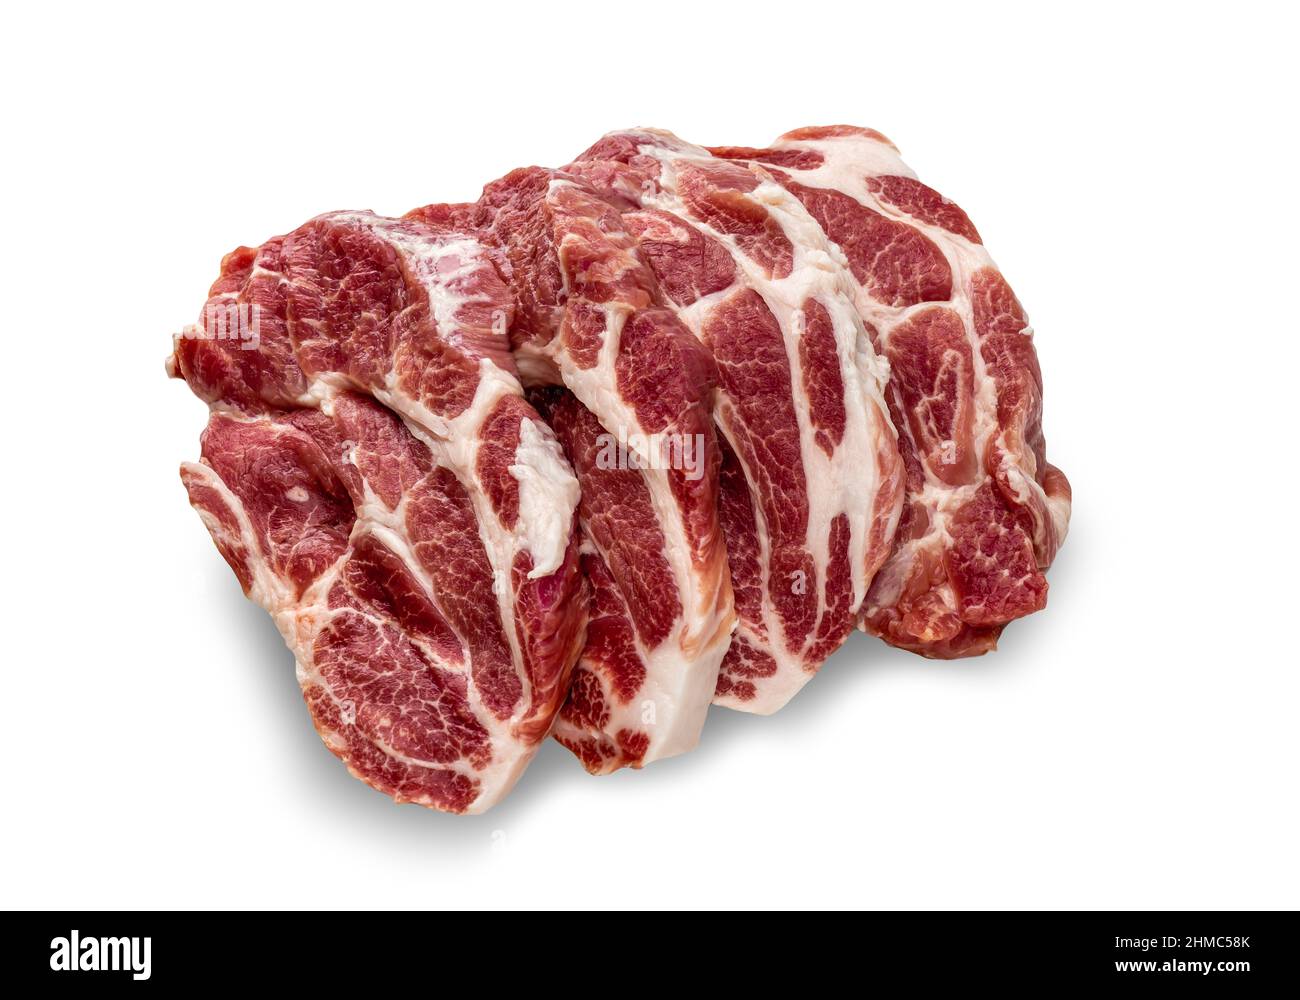 Rohe Fleischstücke aus Schweinefleisch auf weißem Hintergrund. Frisches, rohes Rinderlamm. Metzgerei, Markt, Geschäft. Rohe Schweinekoteletts. Draufsicht auf rohe Schweinesteaks in Reihe Stockfoto